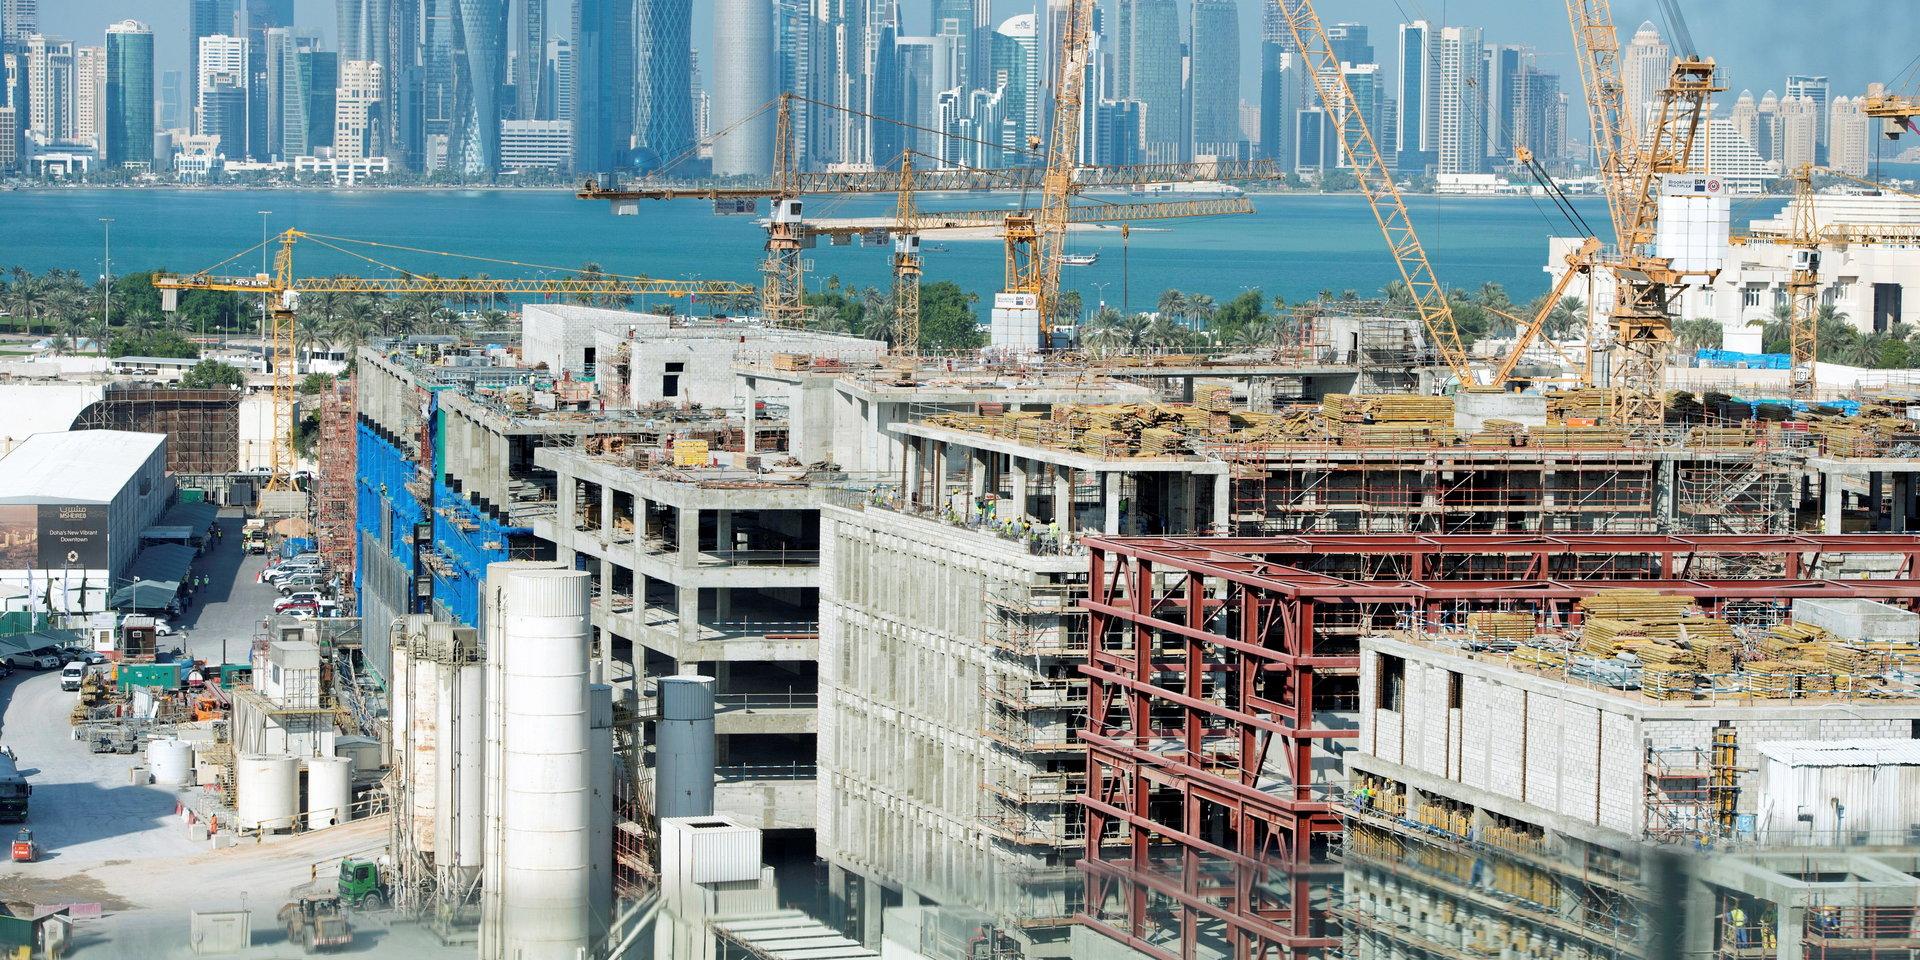 Fotbolls-VM 2022 arrangeras i Qatar. Situationen för gästarbetare tas upp i insändaren. Bilden är från 2014.